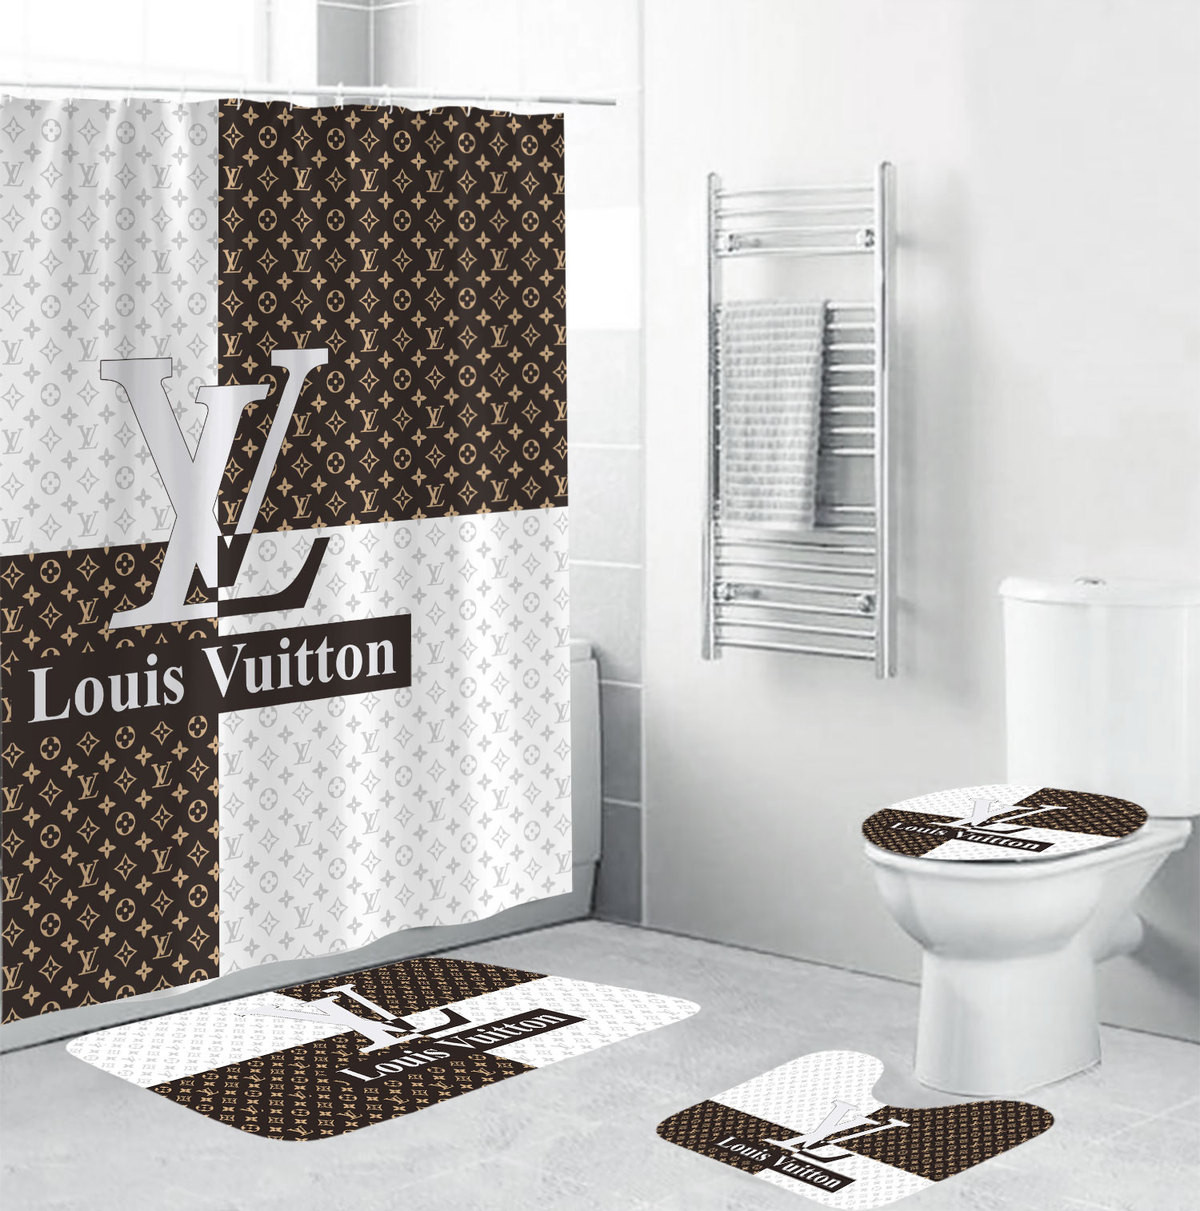 LV-02 Black & White Bathroom Sets